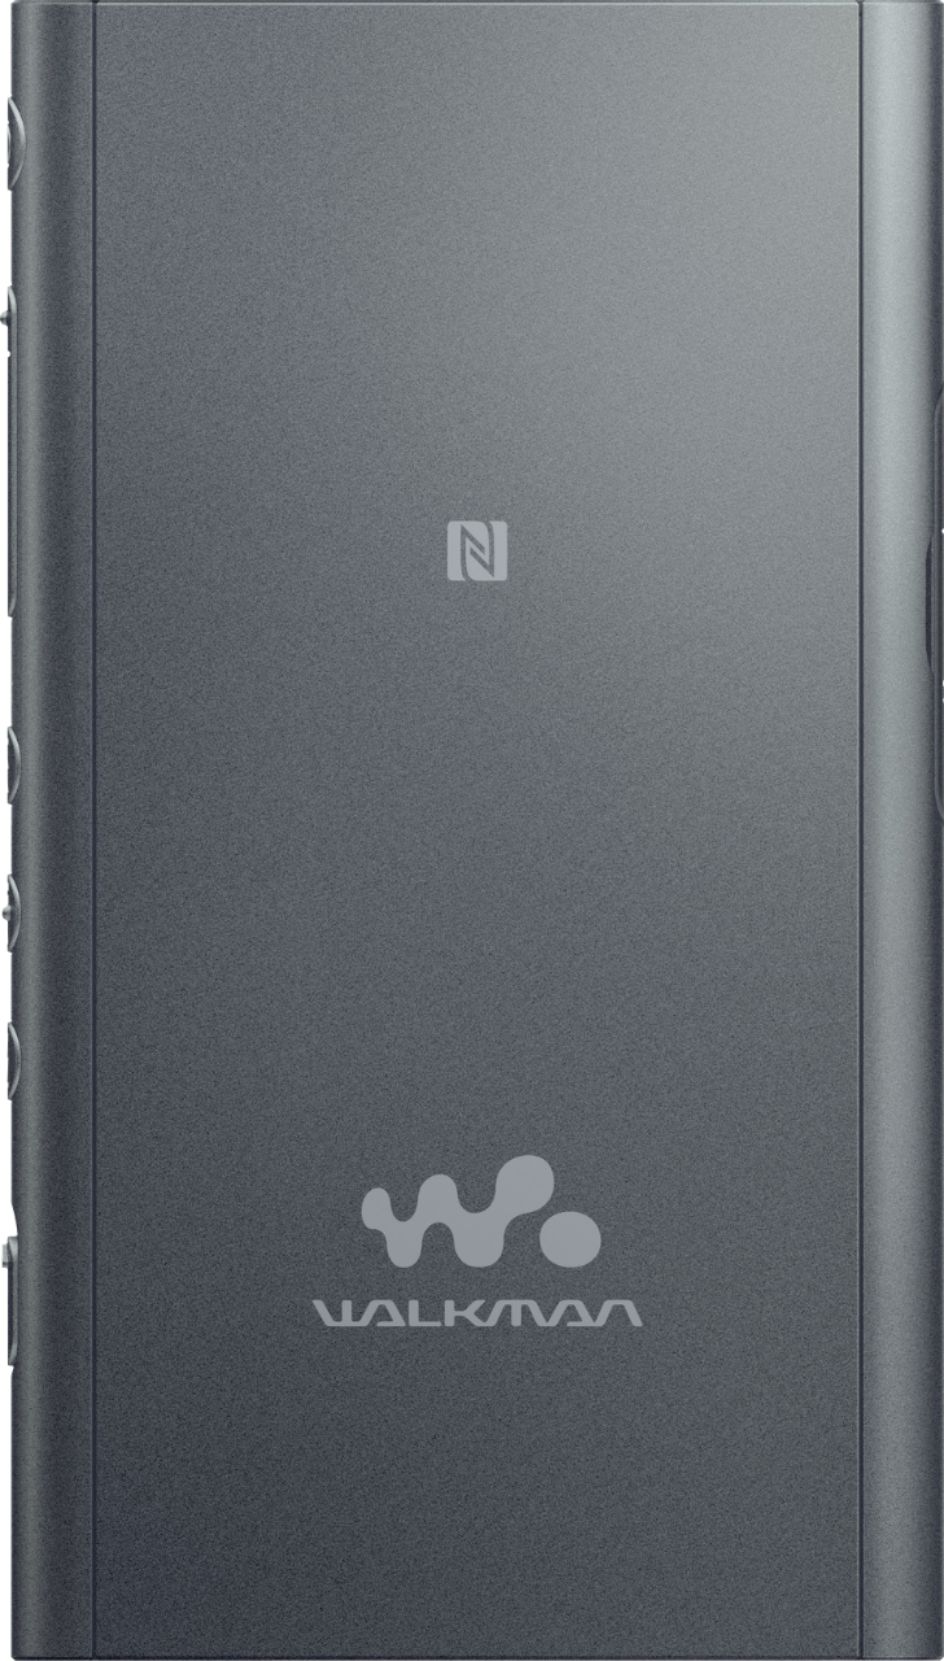 オーディオ機器 ポータブルプレーヤー Best Buy: Sony Walkman NW-A55 Hi-Res 16GB* MP3 Player Black NWA55/B